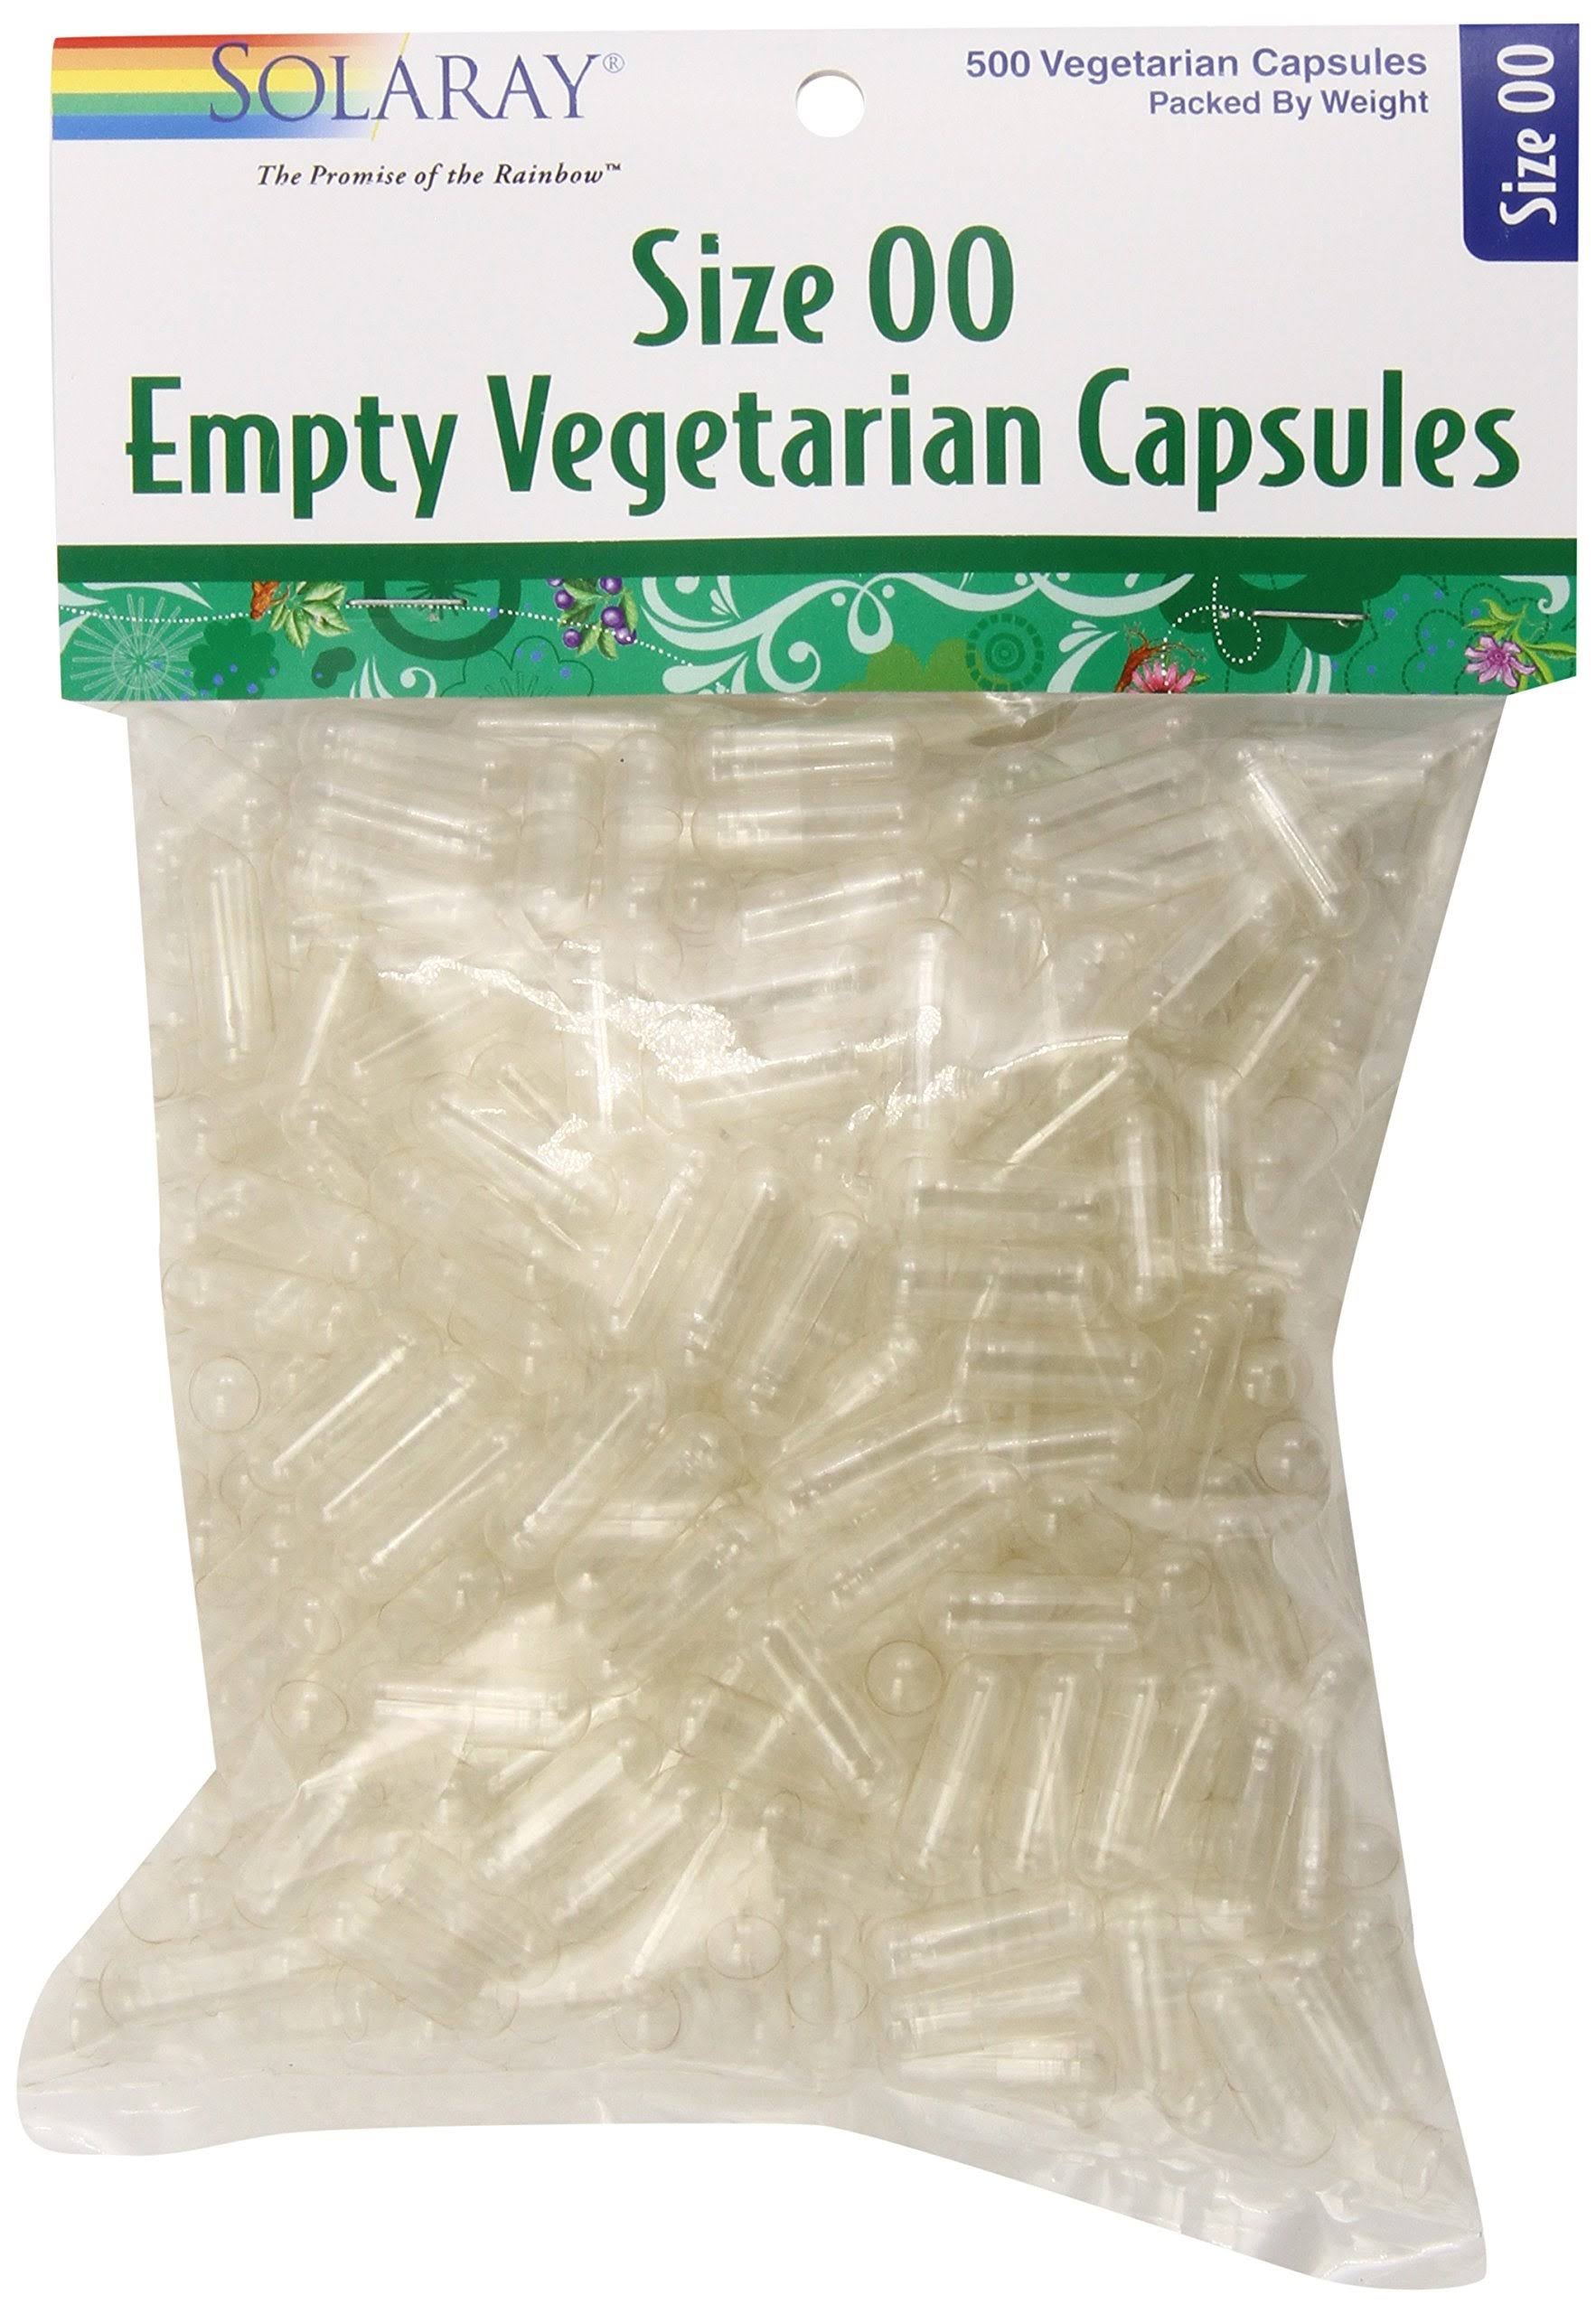 Solaray Empty Vegetable Capsules - Size 00, 500ct